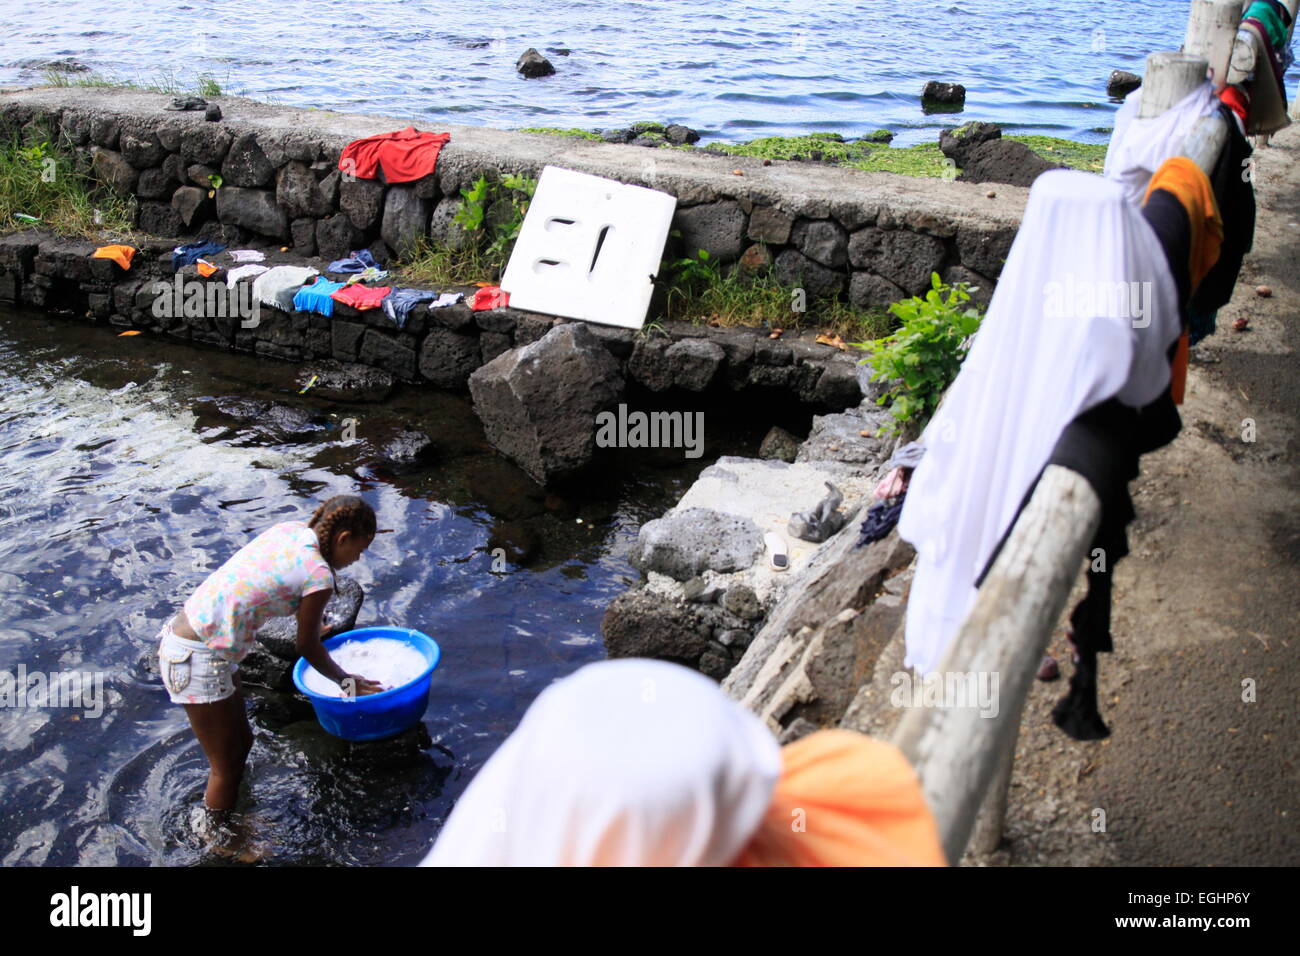 Il lavaggio della biancheria in un canale, di risparmiare sui costi di acqua, può essere visto in alcune regioni in Mauritius Foto Stock